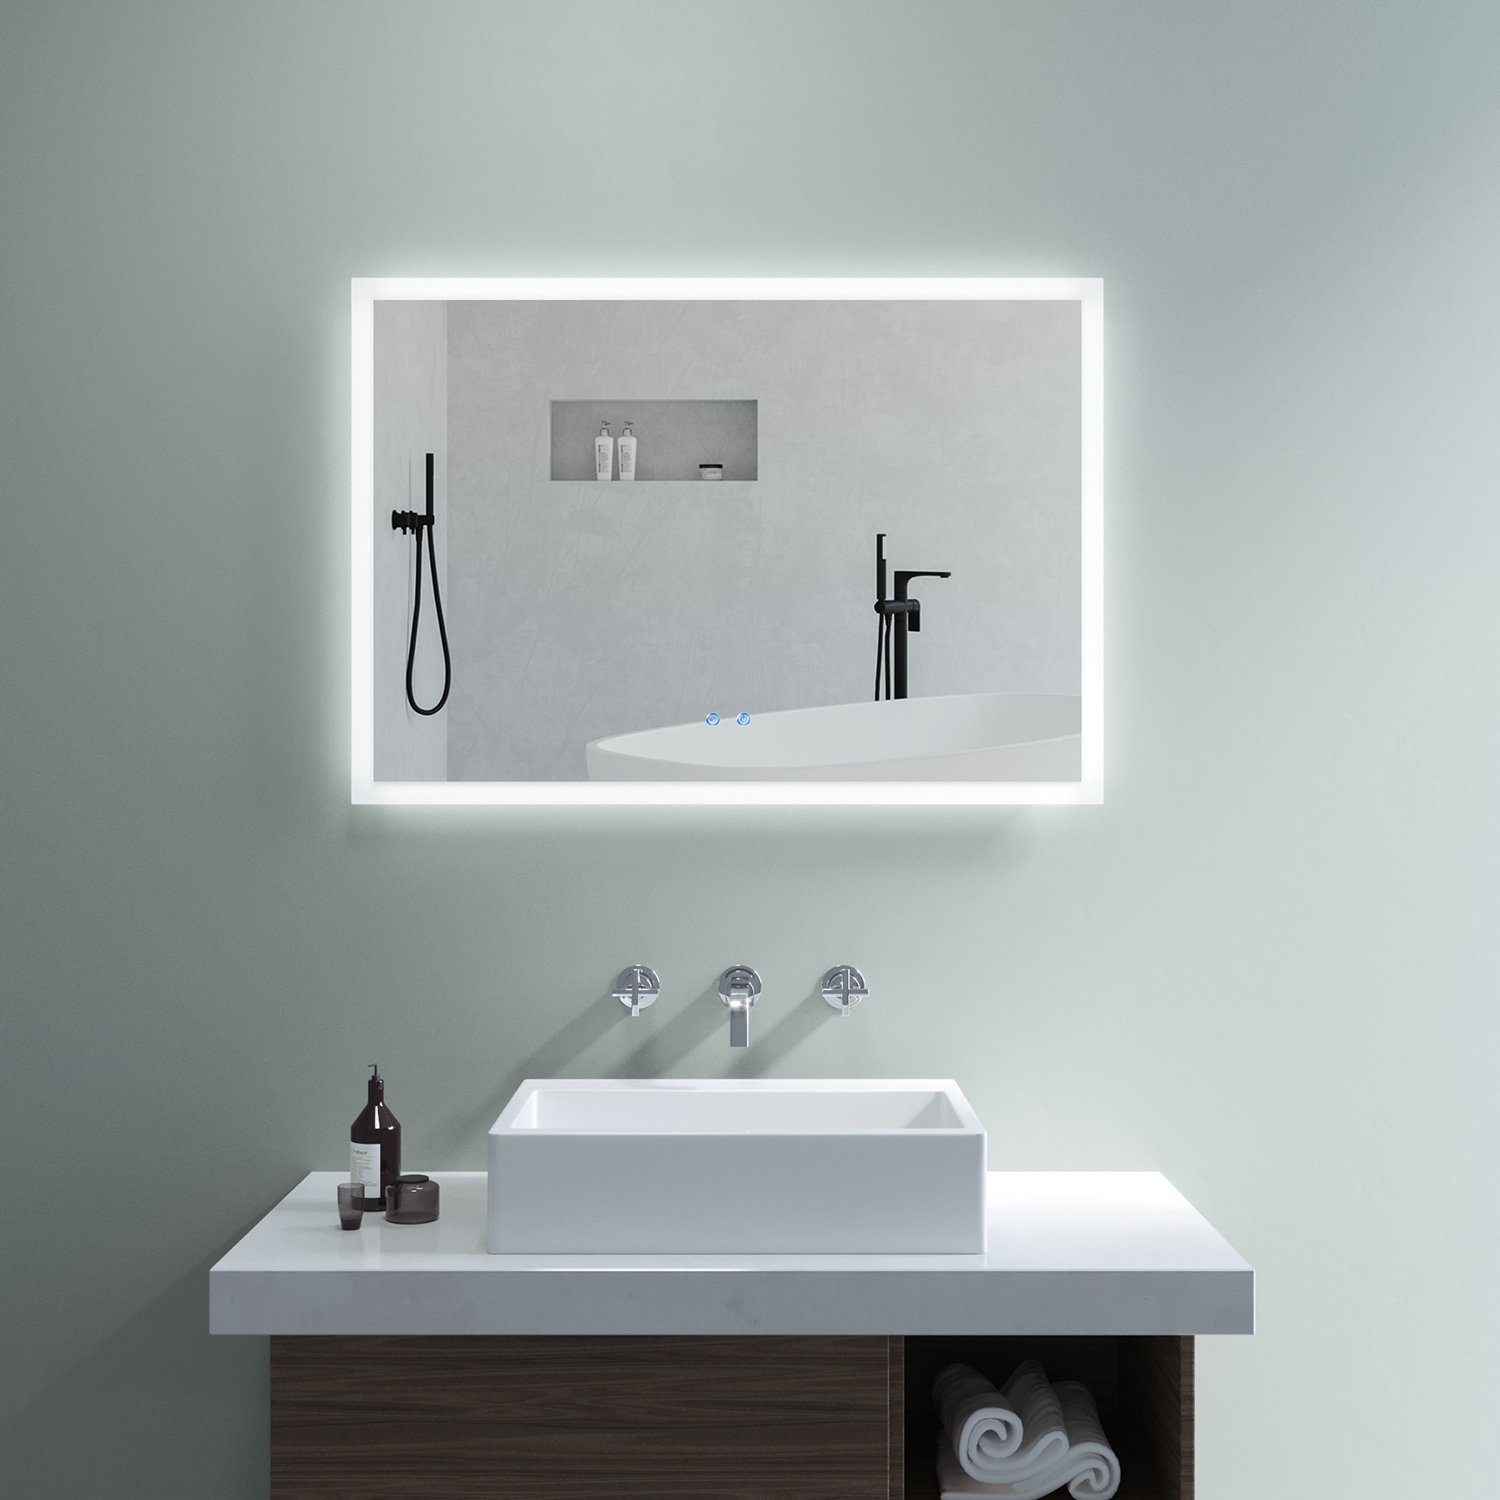 AQUABATOS Badspiegel Badspiegel mit Beleuchtung Badezimmerspiegel LED Licht (Wandspiegel Lichtspiegel), Dimmbar, Kaltweiß 6400K, Touch Schalter, Spiegelheizung